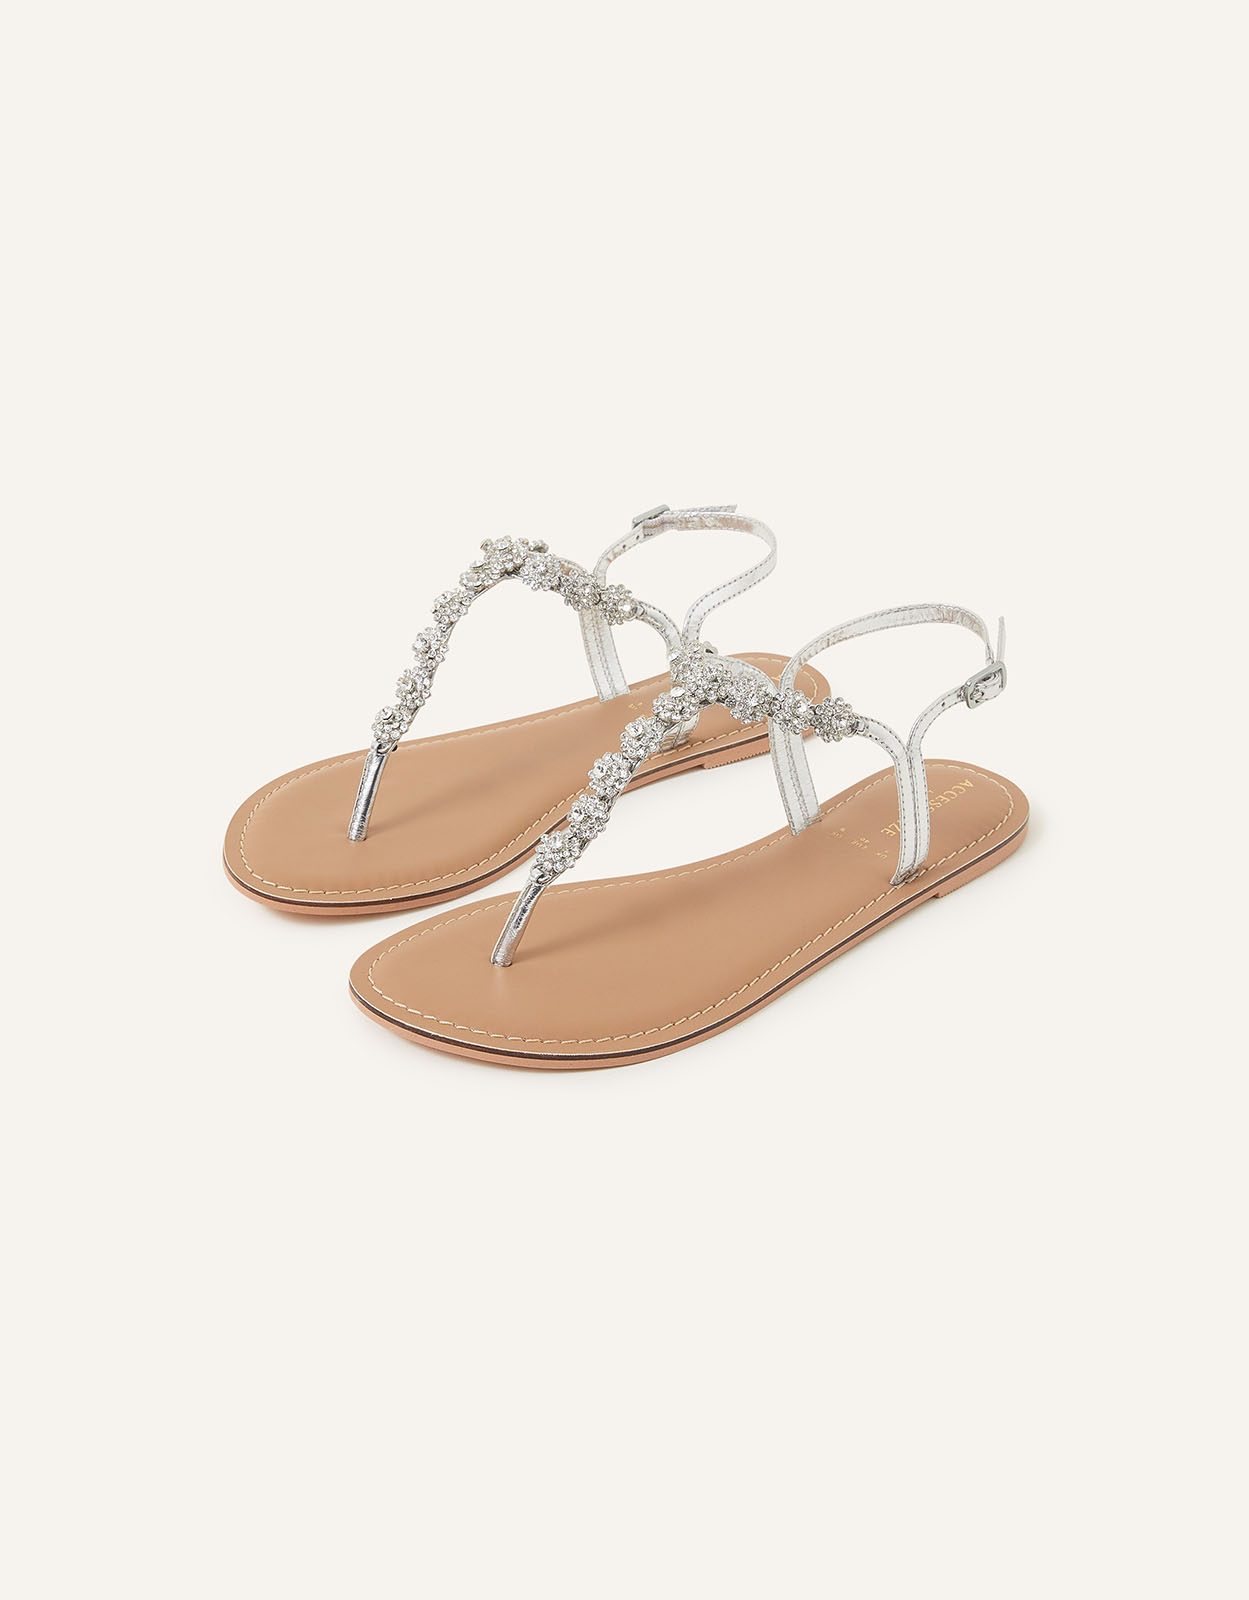 Accessorize Women's Reno Sparkle Diamante Sandals Silver, Size: 36